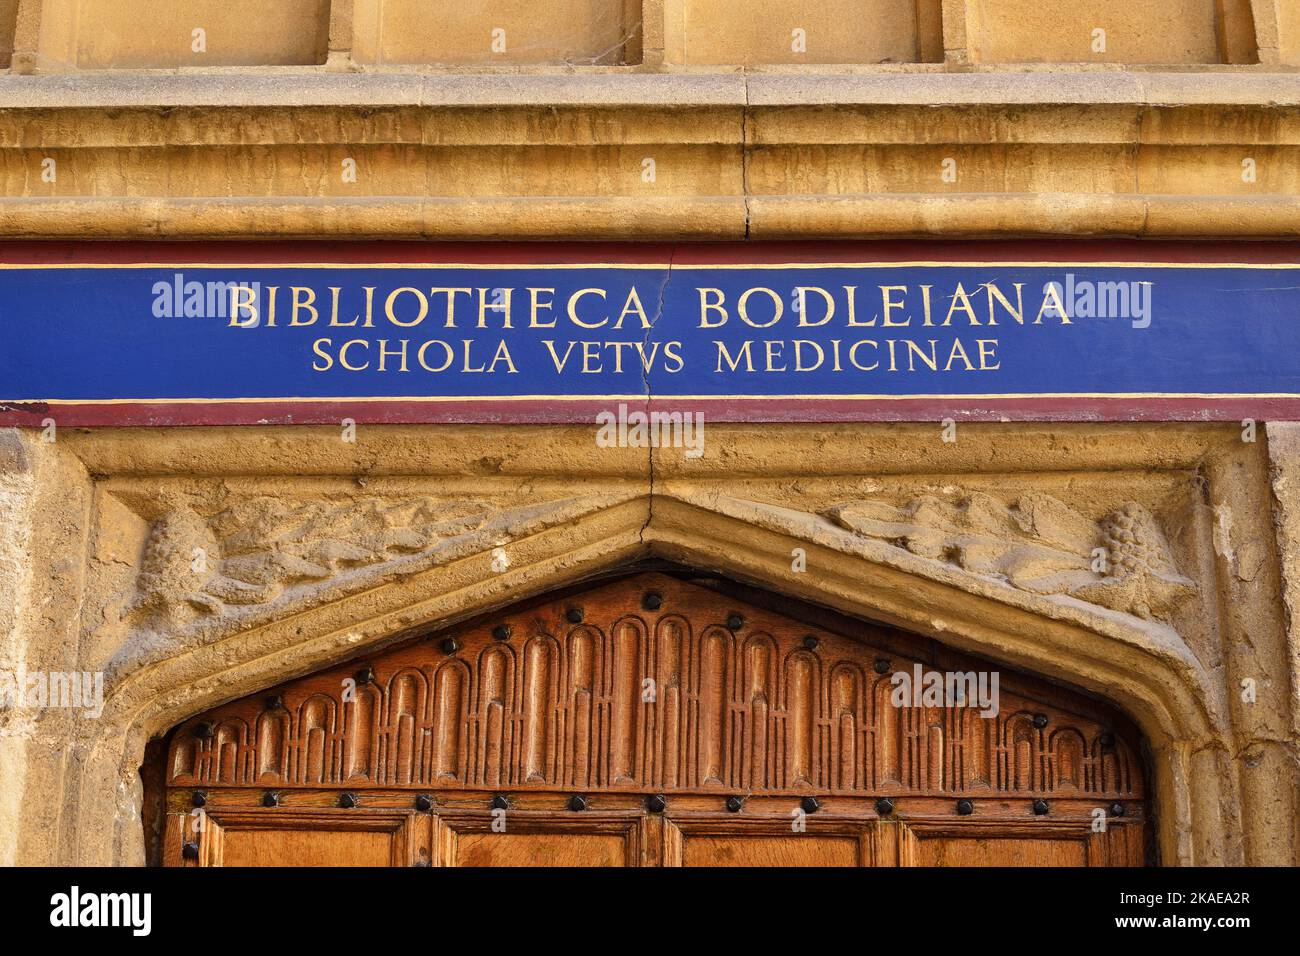 Bodleian Library, Oxford University, Großbritannien. Viereckige Türschild zu Schola Vetvs Medicinae, der alten Medizinschule. Stockfoto